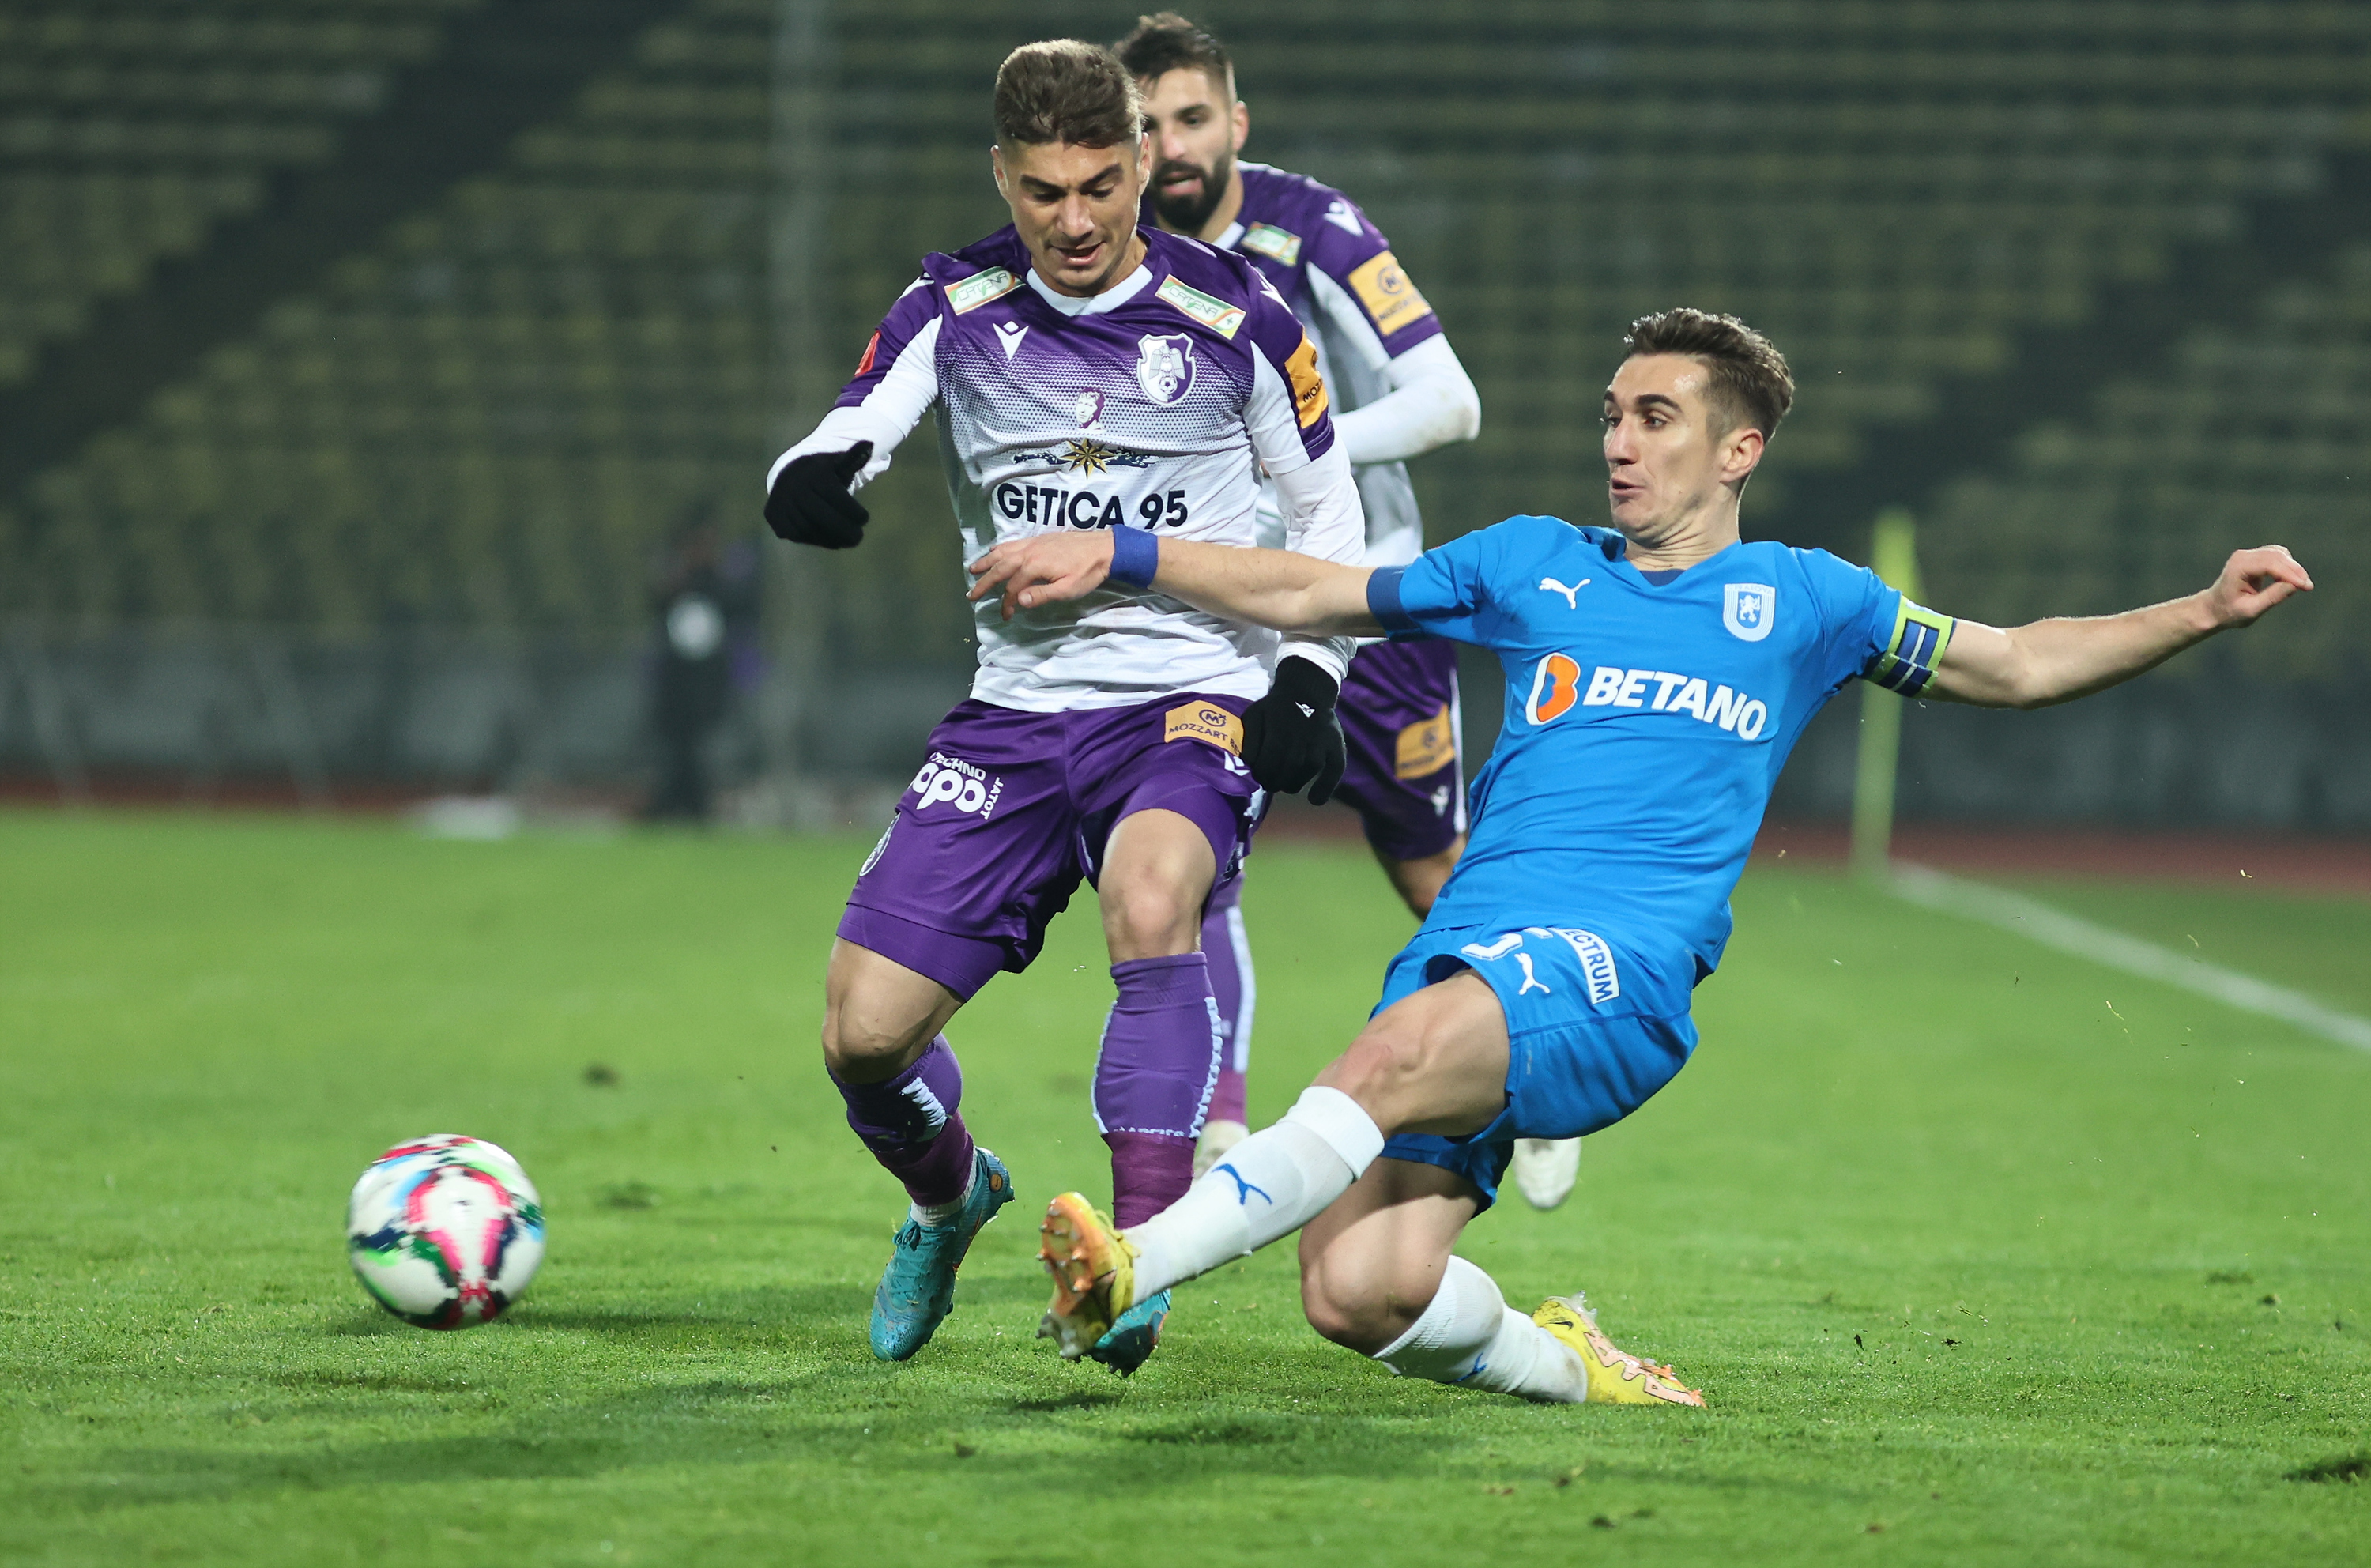 Universitatea Craiova - FC Argeș, Live Video 18:00, DGS 1. Meci care poate fi decisiv pentru Marius Croitoru. ECHIPELE